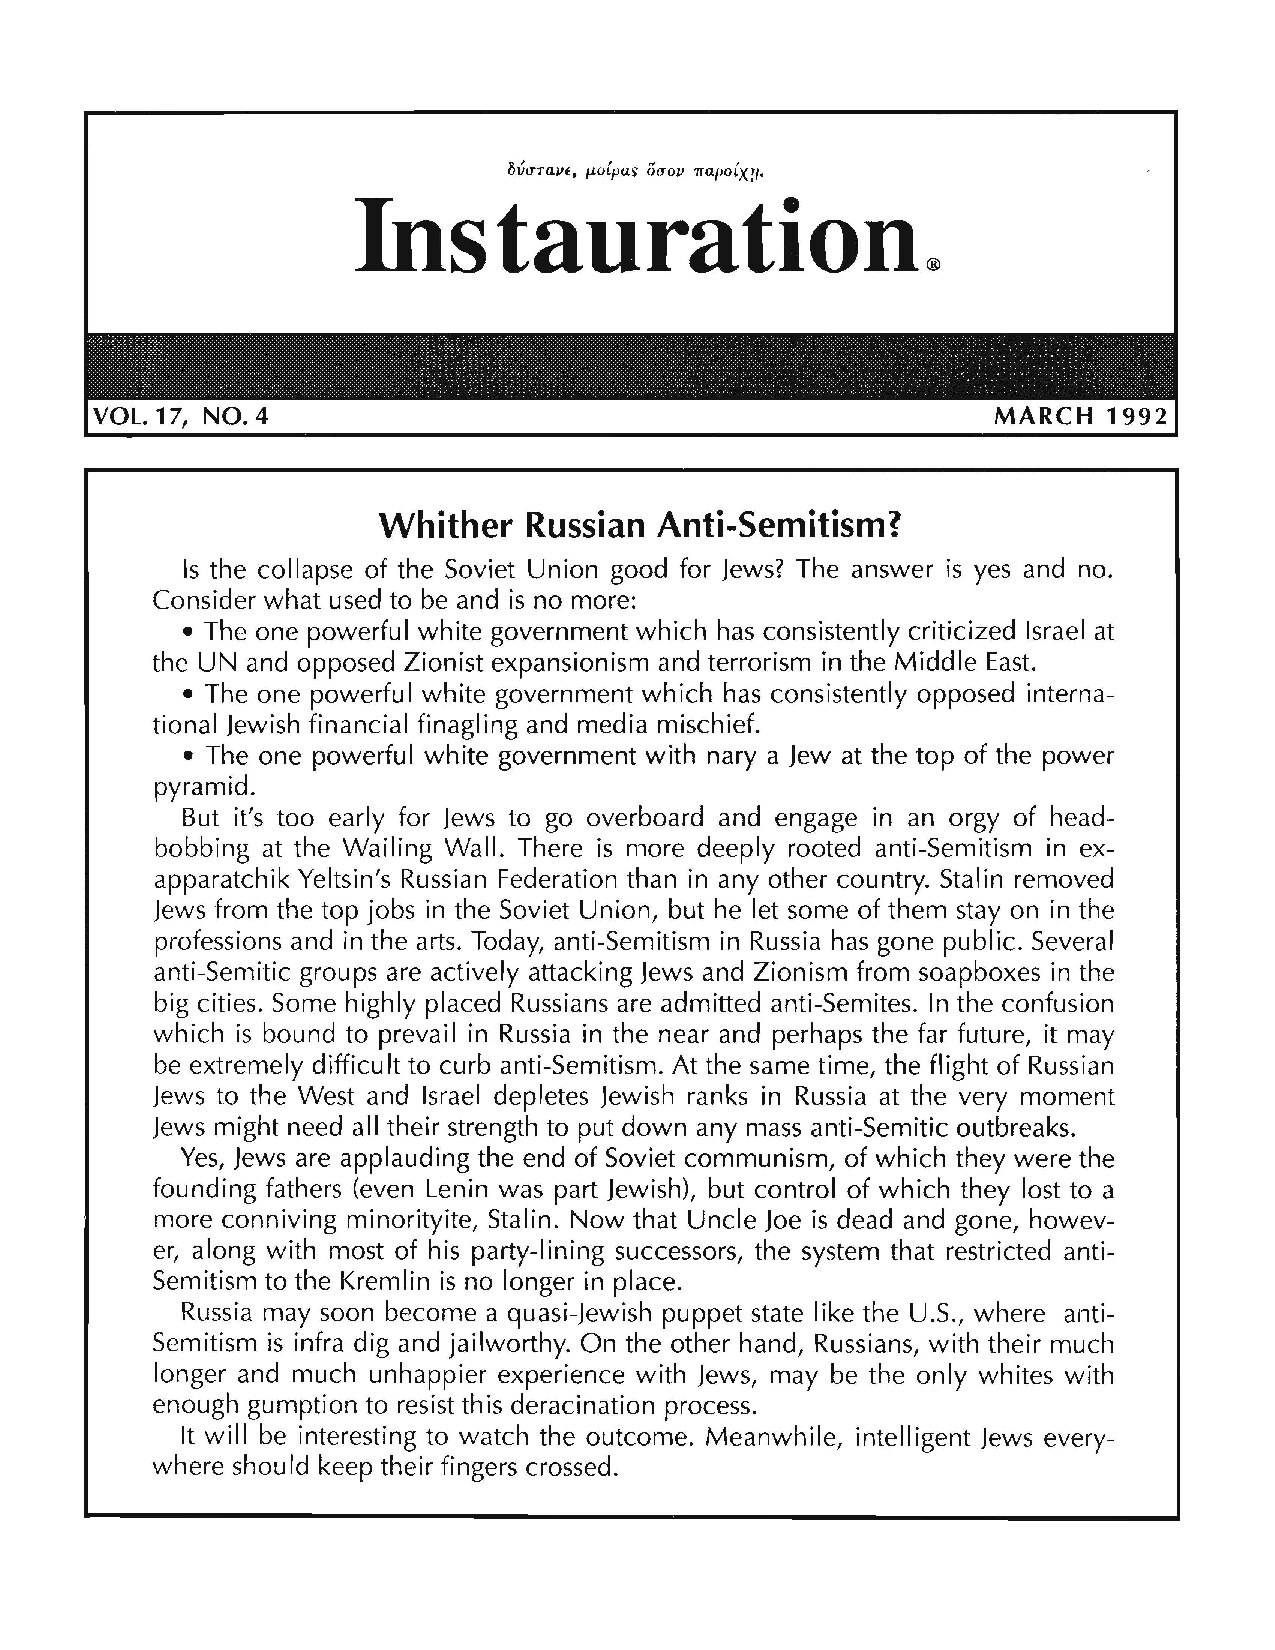 Instauration-1992-03-March-Vol17-No4